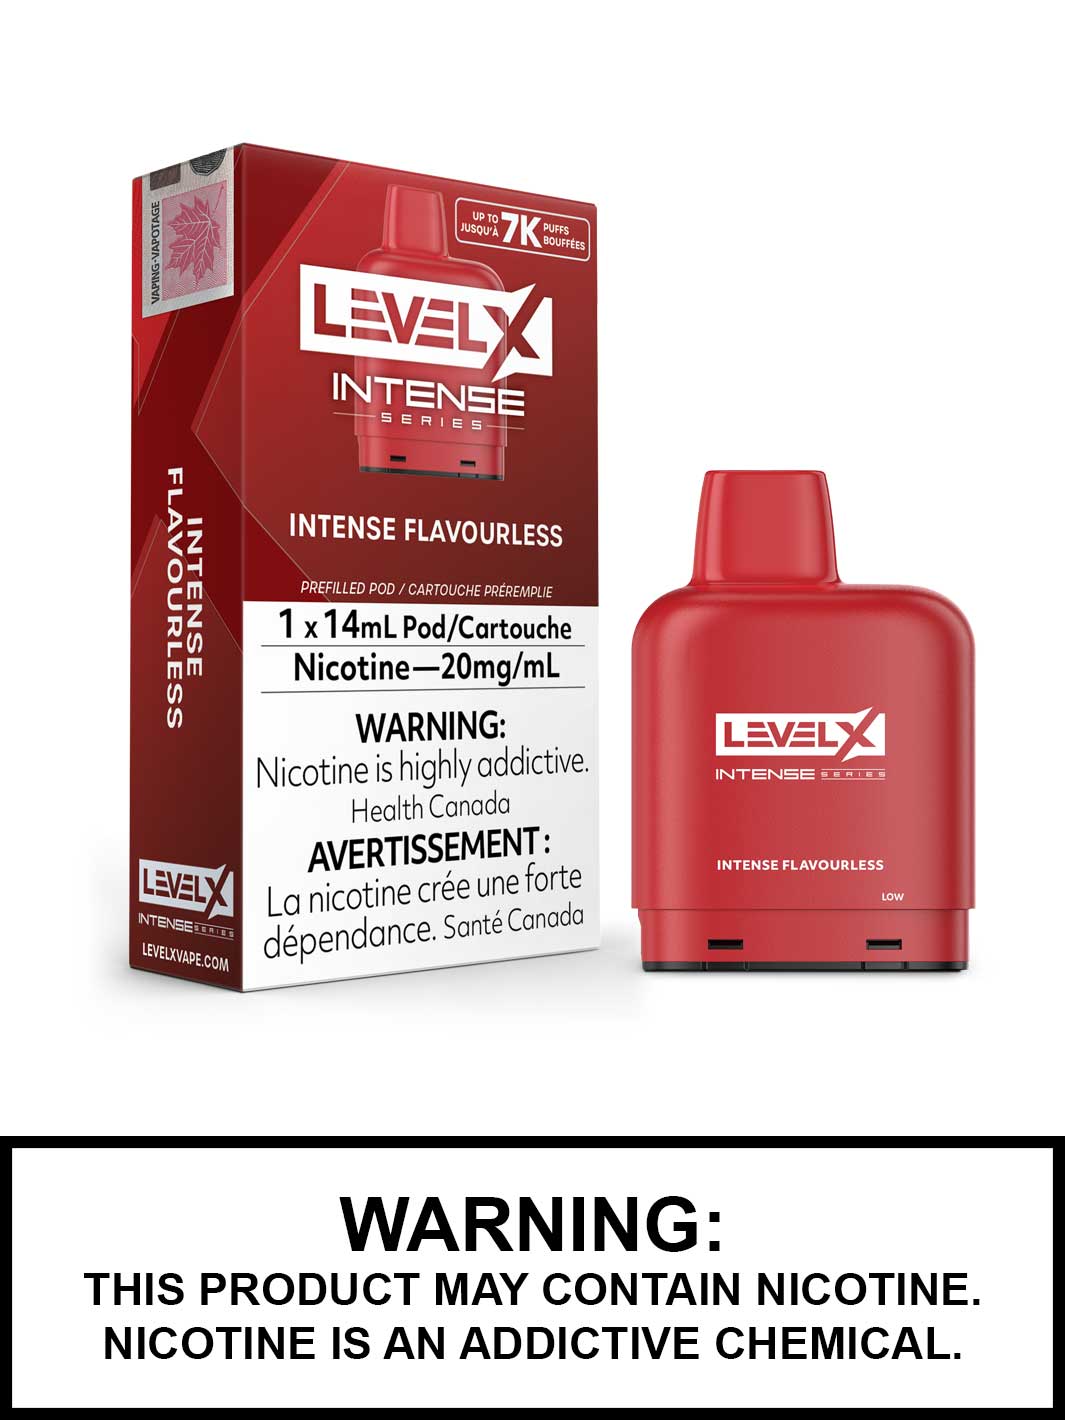 Intense Flavourless Level X Intense Series Pods, Vape360 Canada